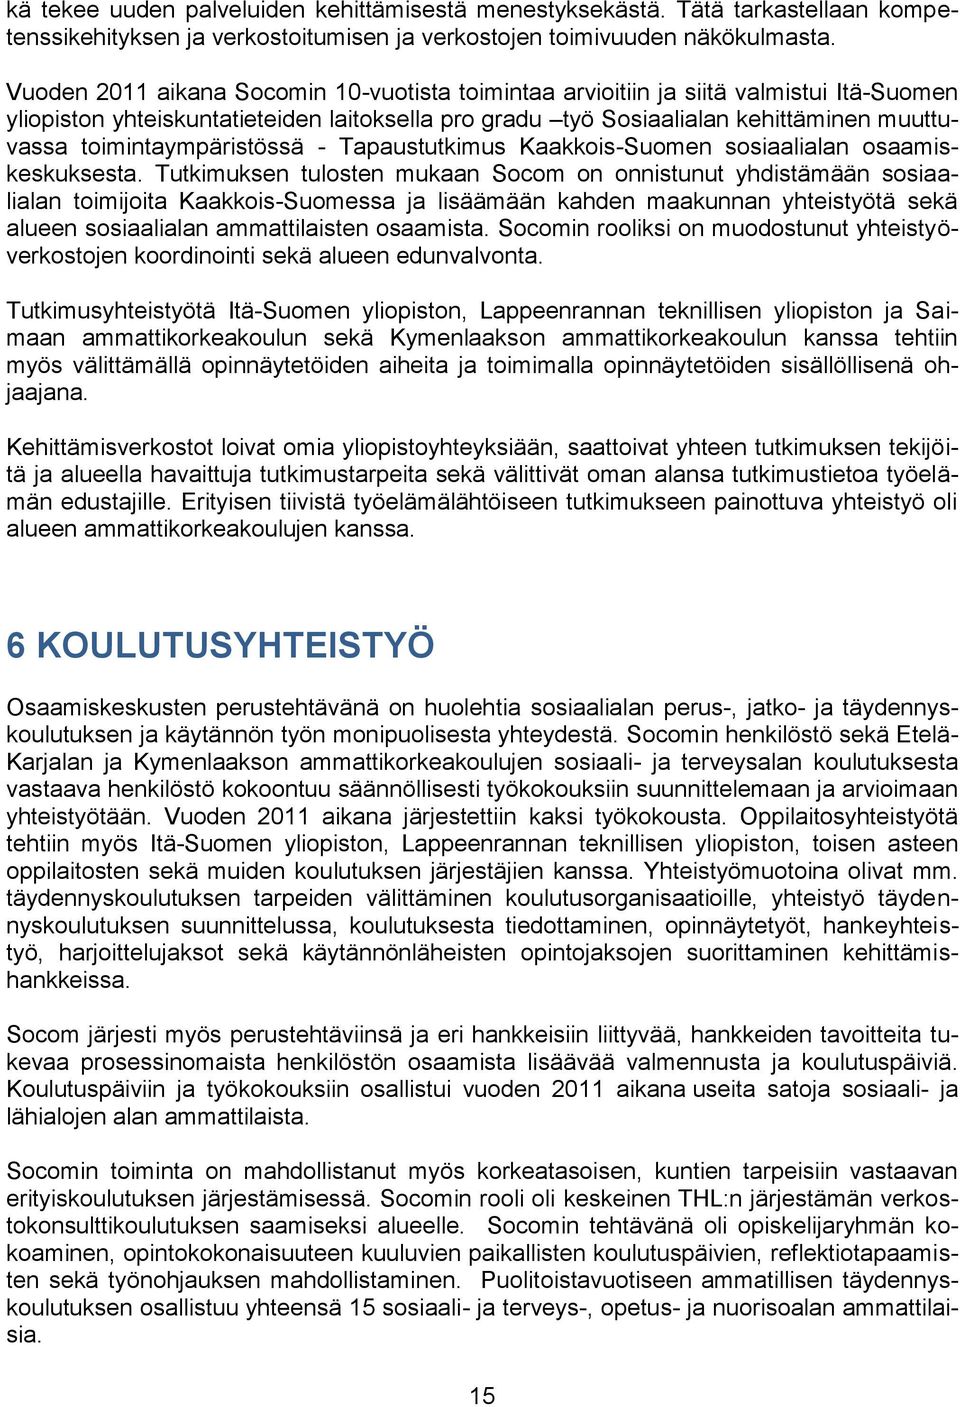 toimintaympäristössä - Tapaustutkimus Kaakkois-Suomen sosiaalialan osaamiskeskuksesta.